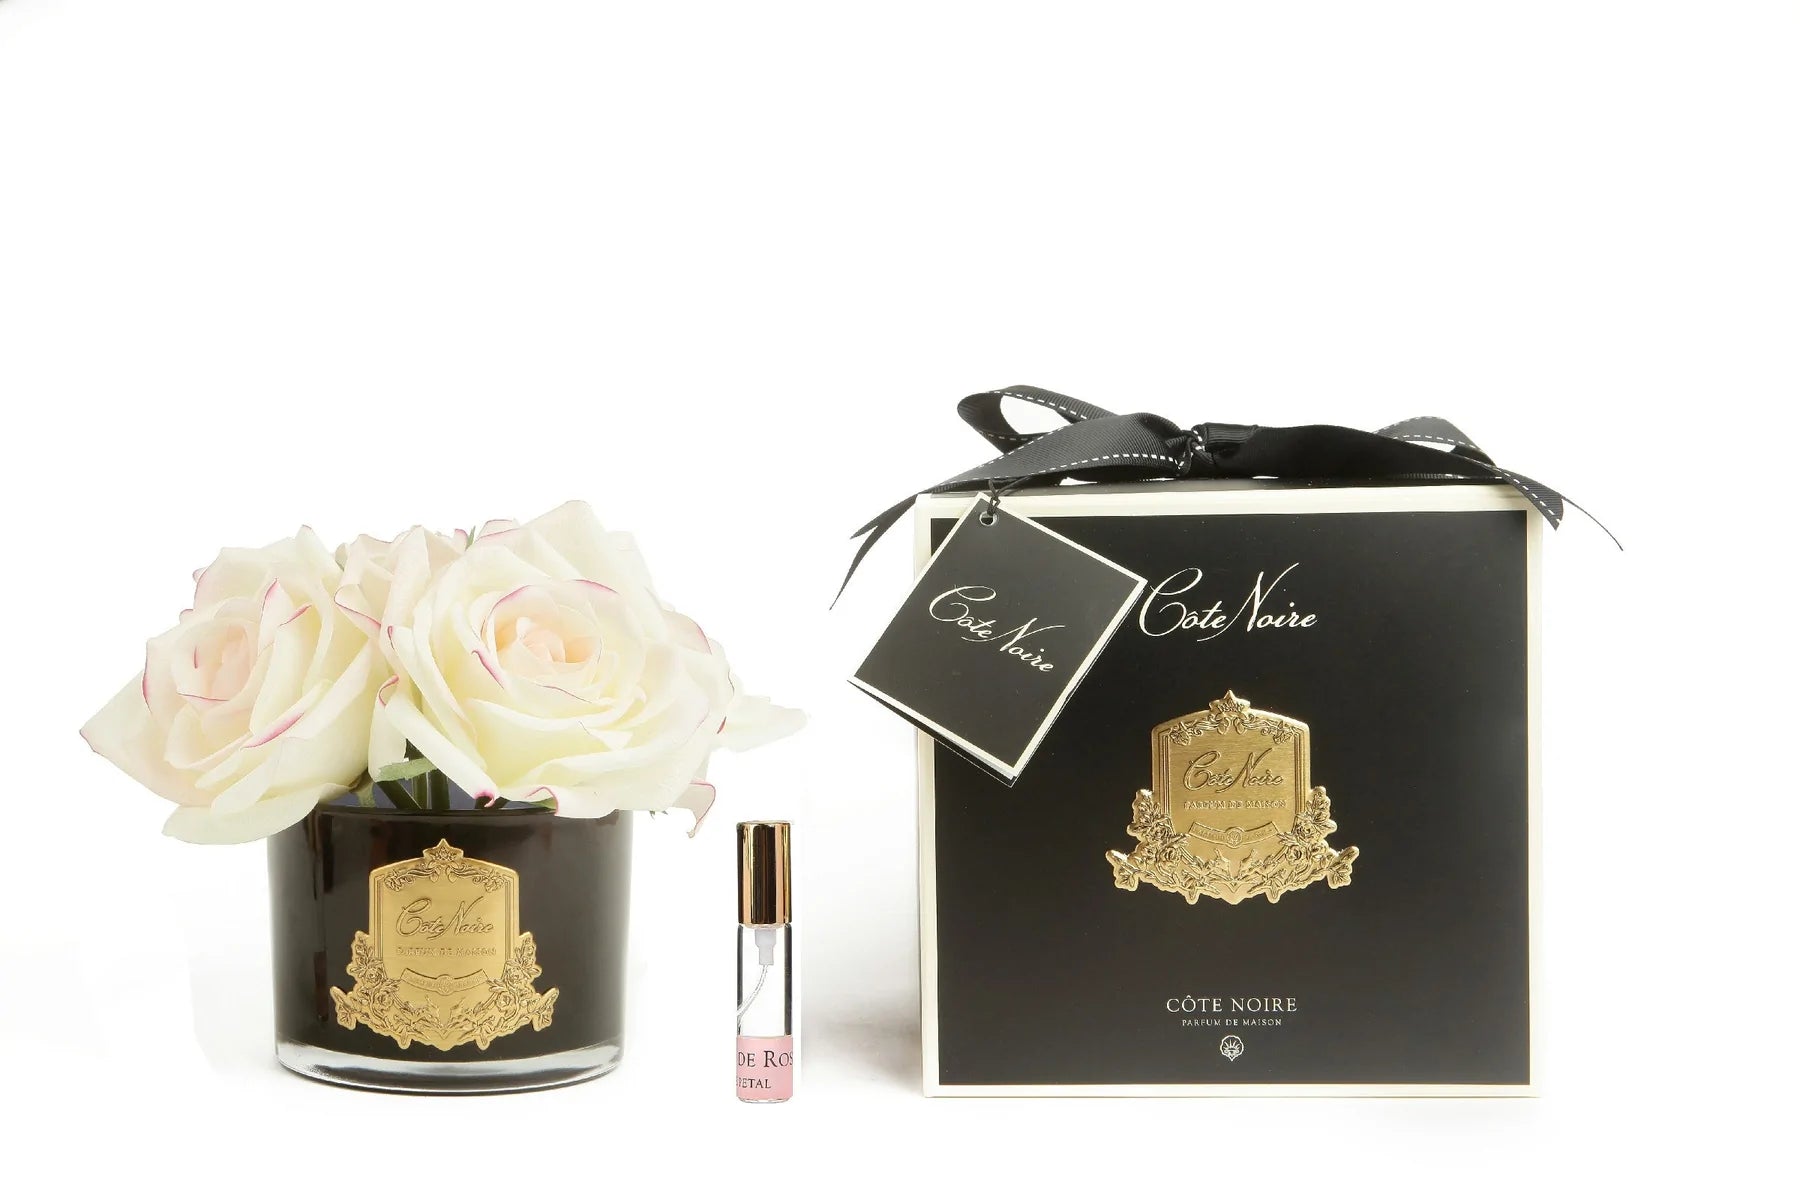 5 weisse rosen mit pinkem rand in dunklem glas mit goldenem emblem. dazu duftspray und schwarze verpackung.